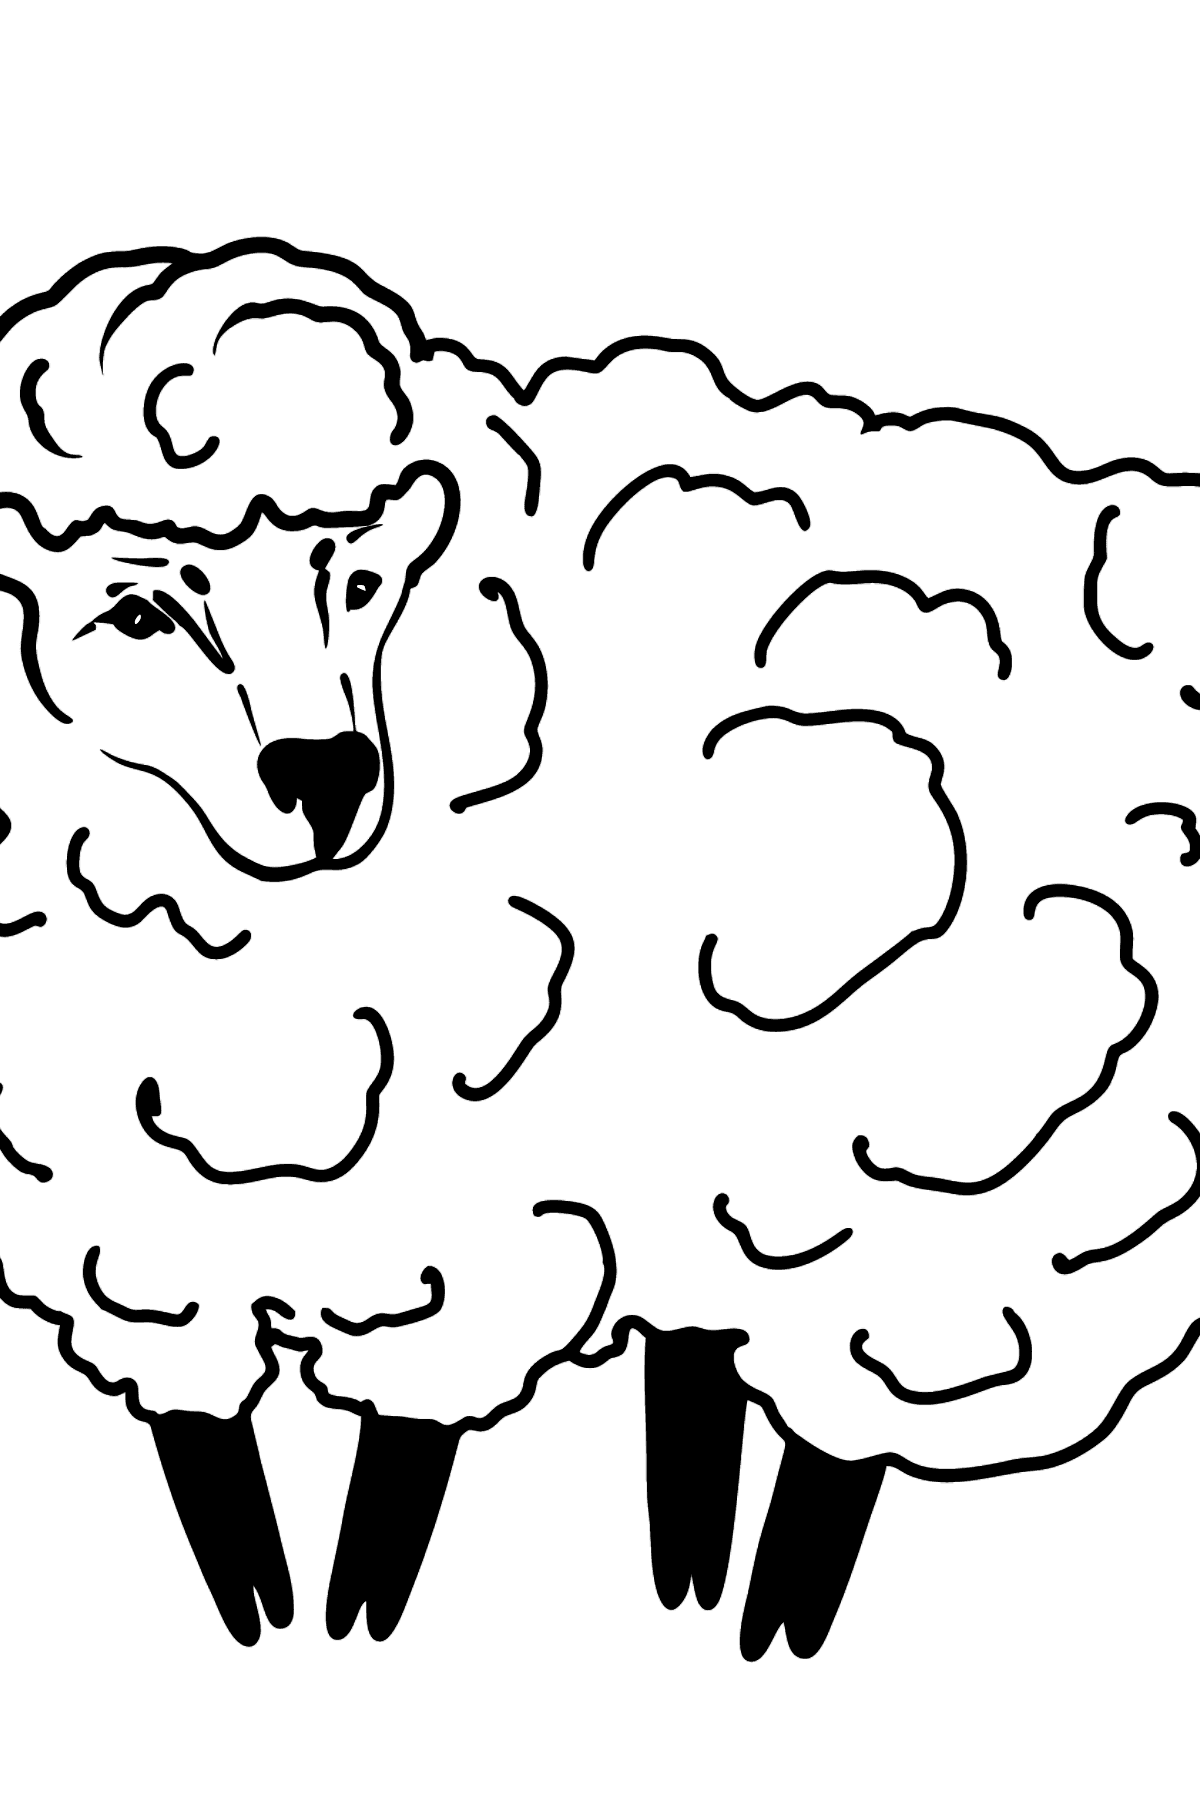 Kleurplaat schapen - kleurplaten voor kinderen